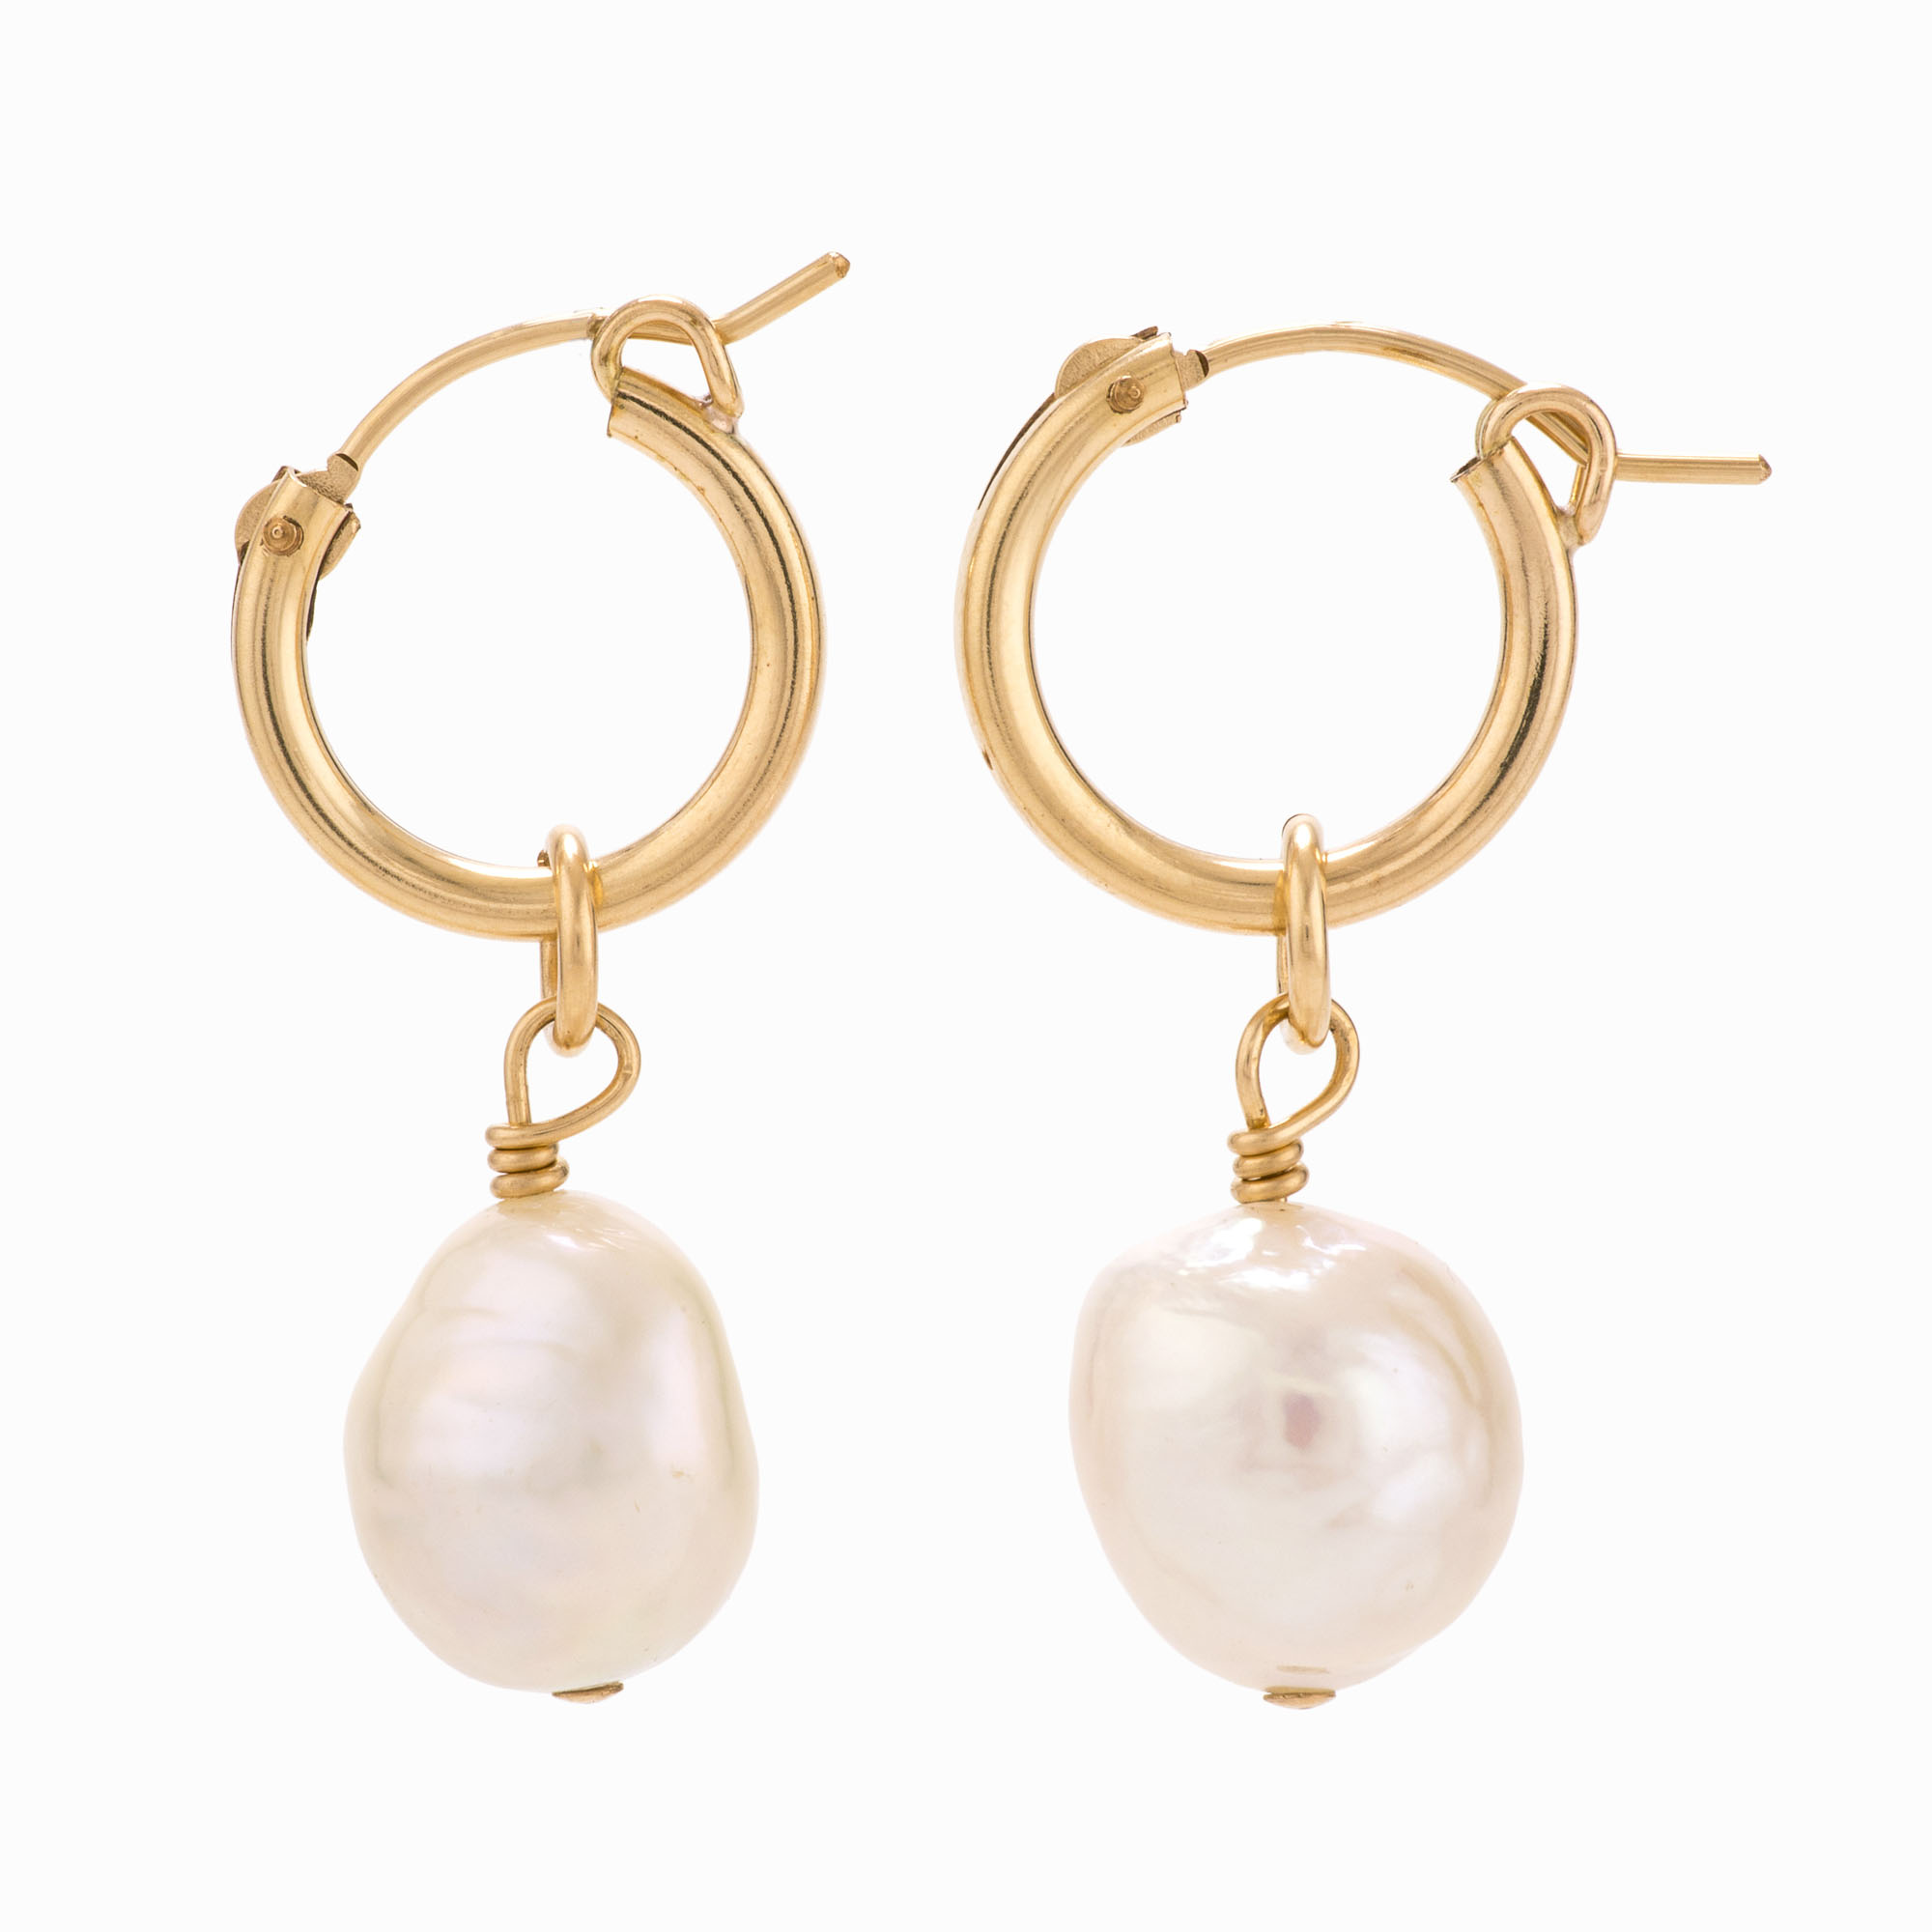 Featured image for “Pandora Pearl Hoop Earrings”